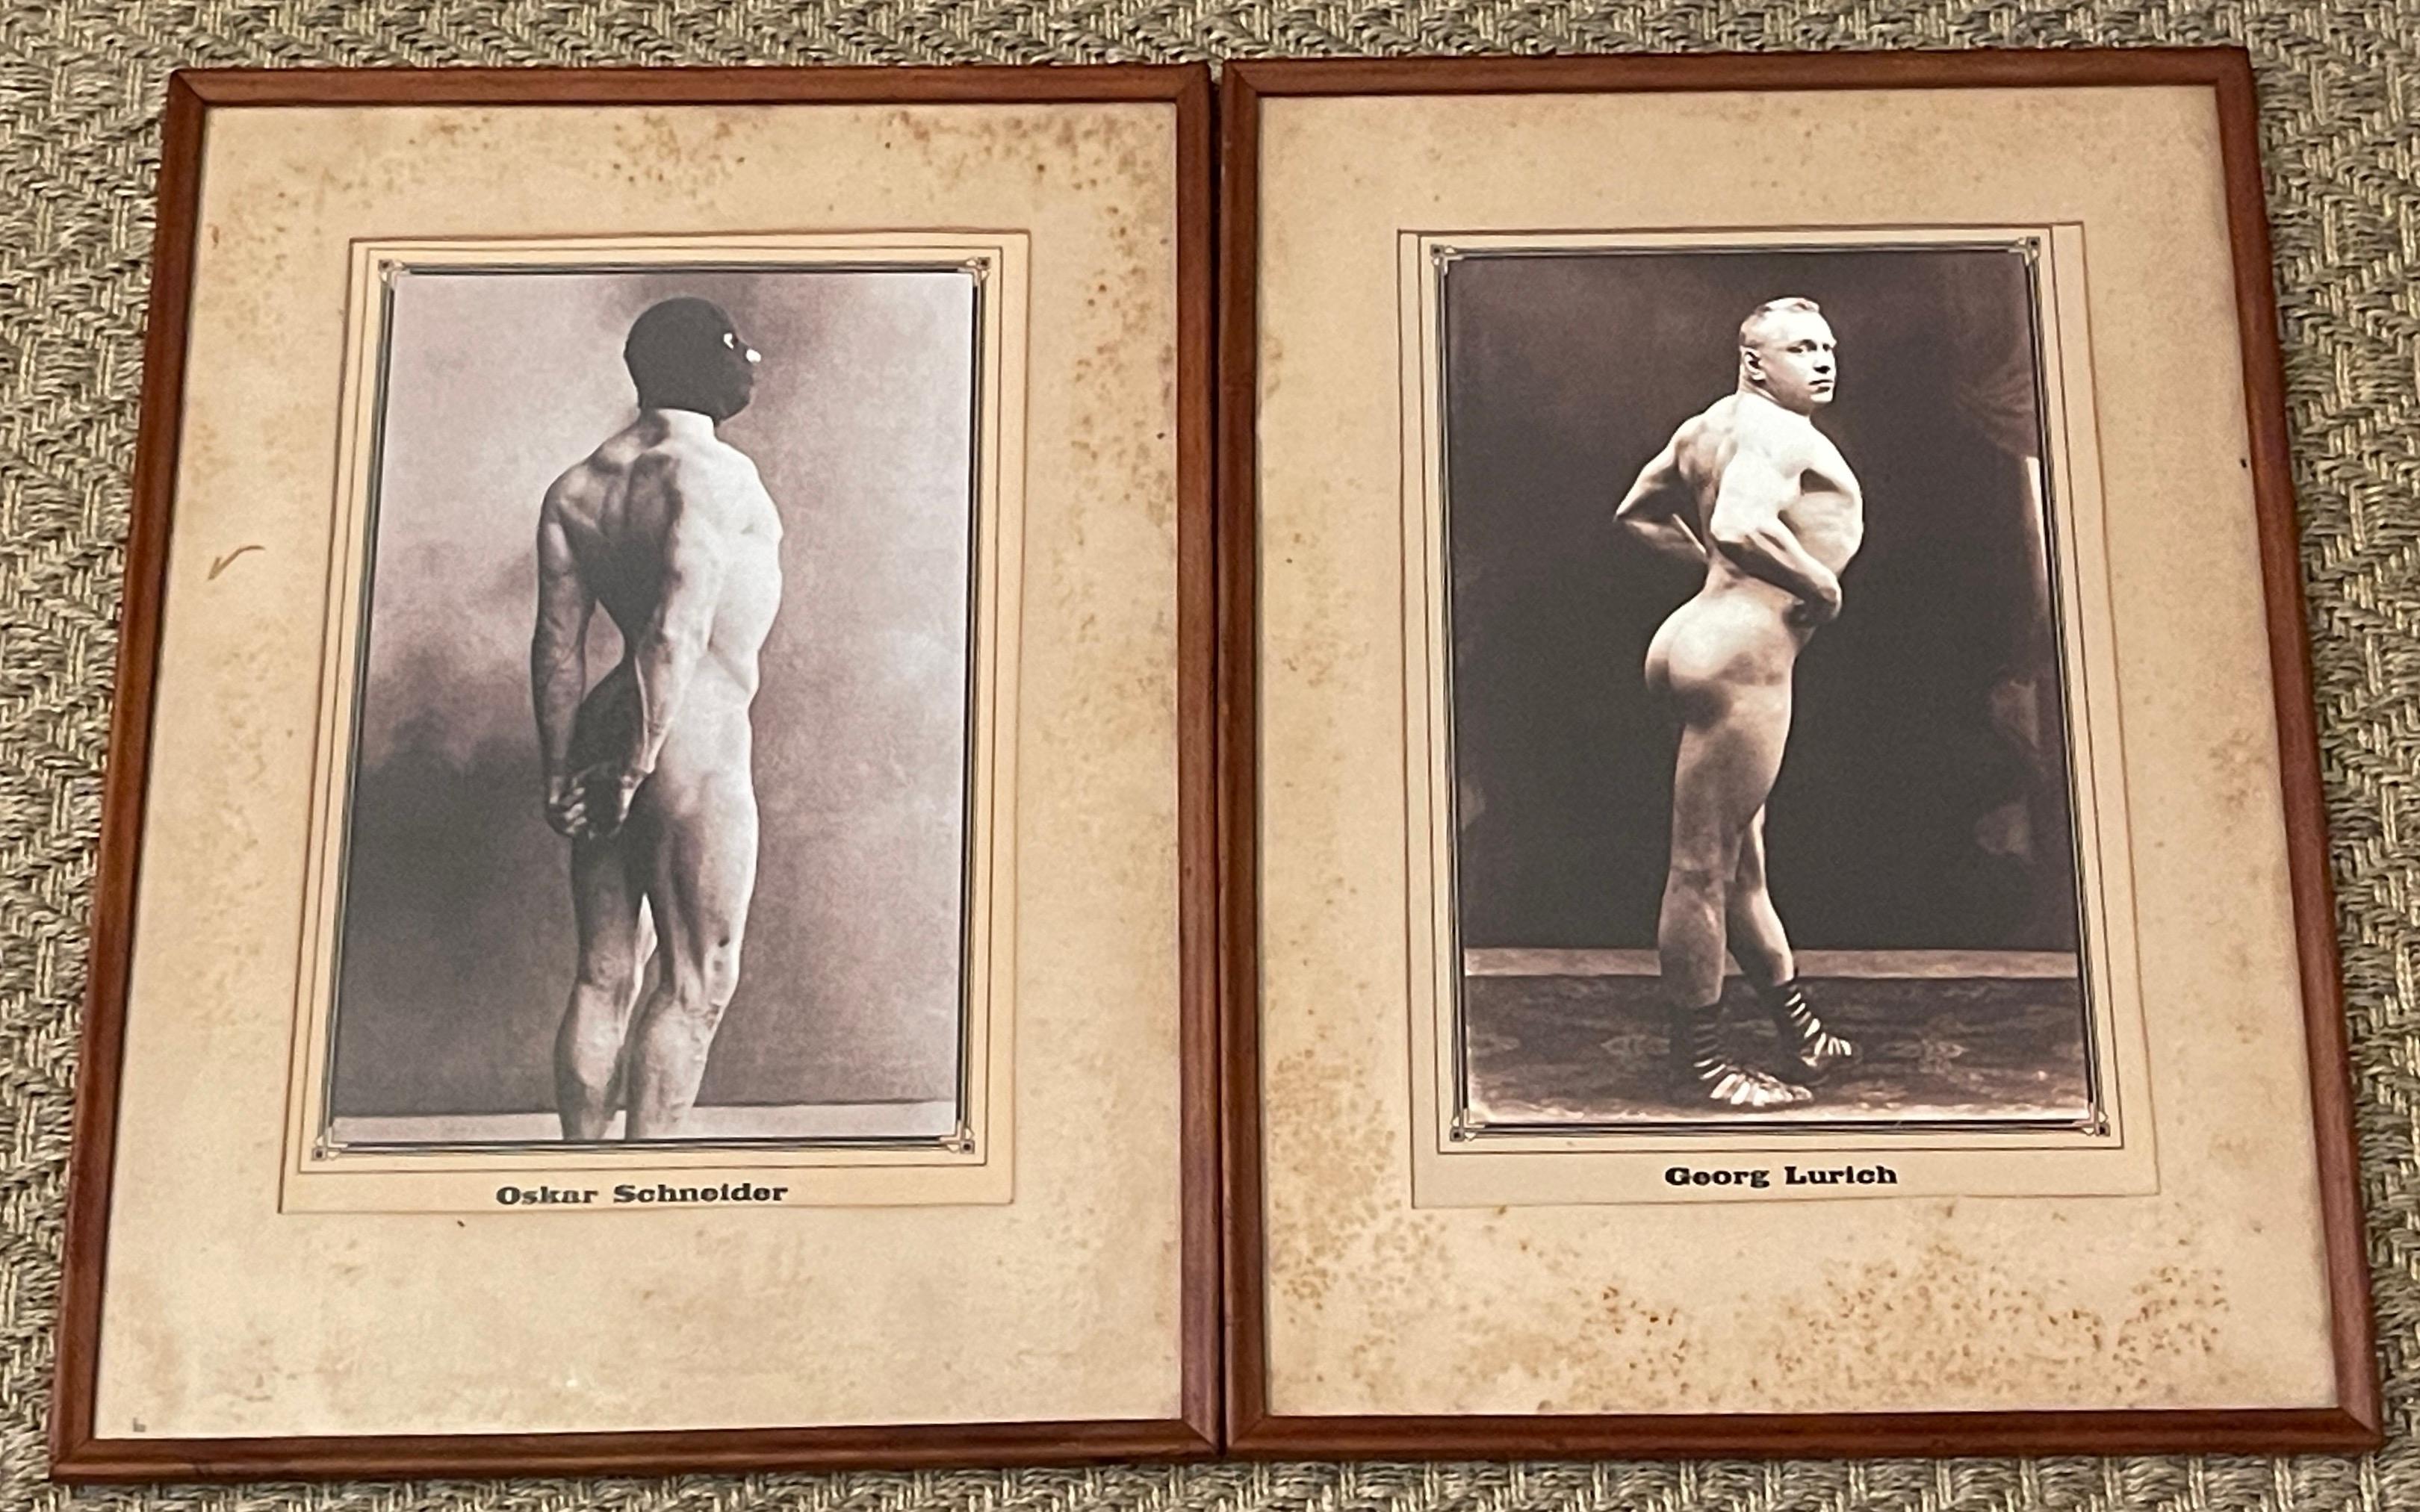 Paire d'affiches de tournoi gréco-romain d'Oskar Schneider et Georg Lurich, nus
Russie, avant 1915

La paire d'affiches de tournoi russe tsariste représentant Oskar Schneider et Georg Lurich est une découverte extraordinaire qui donne un aperçu du